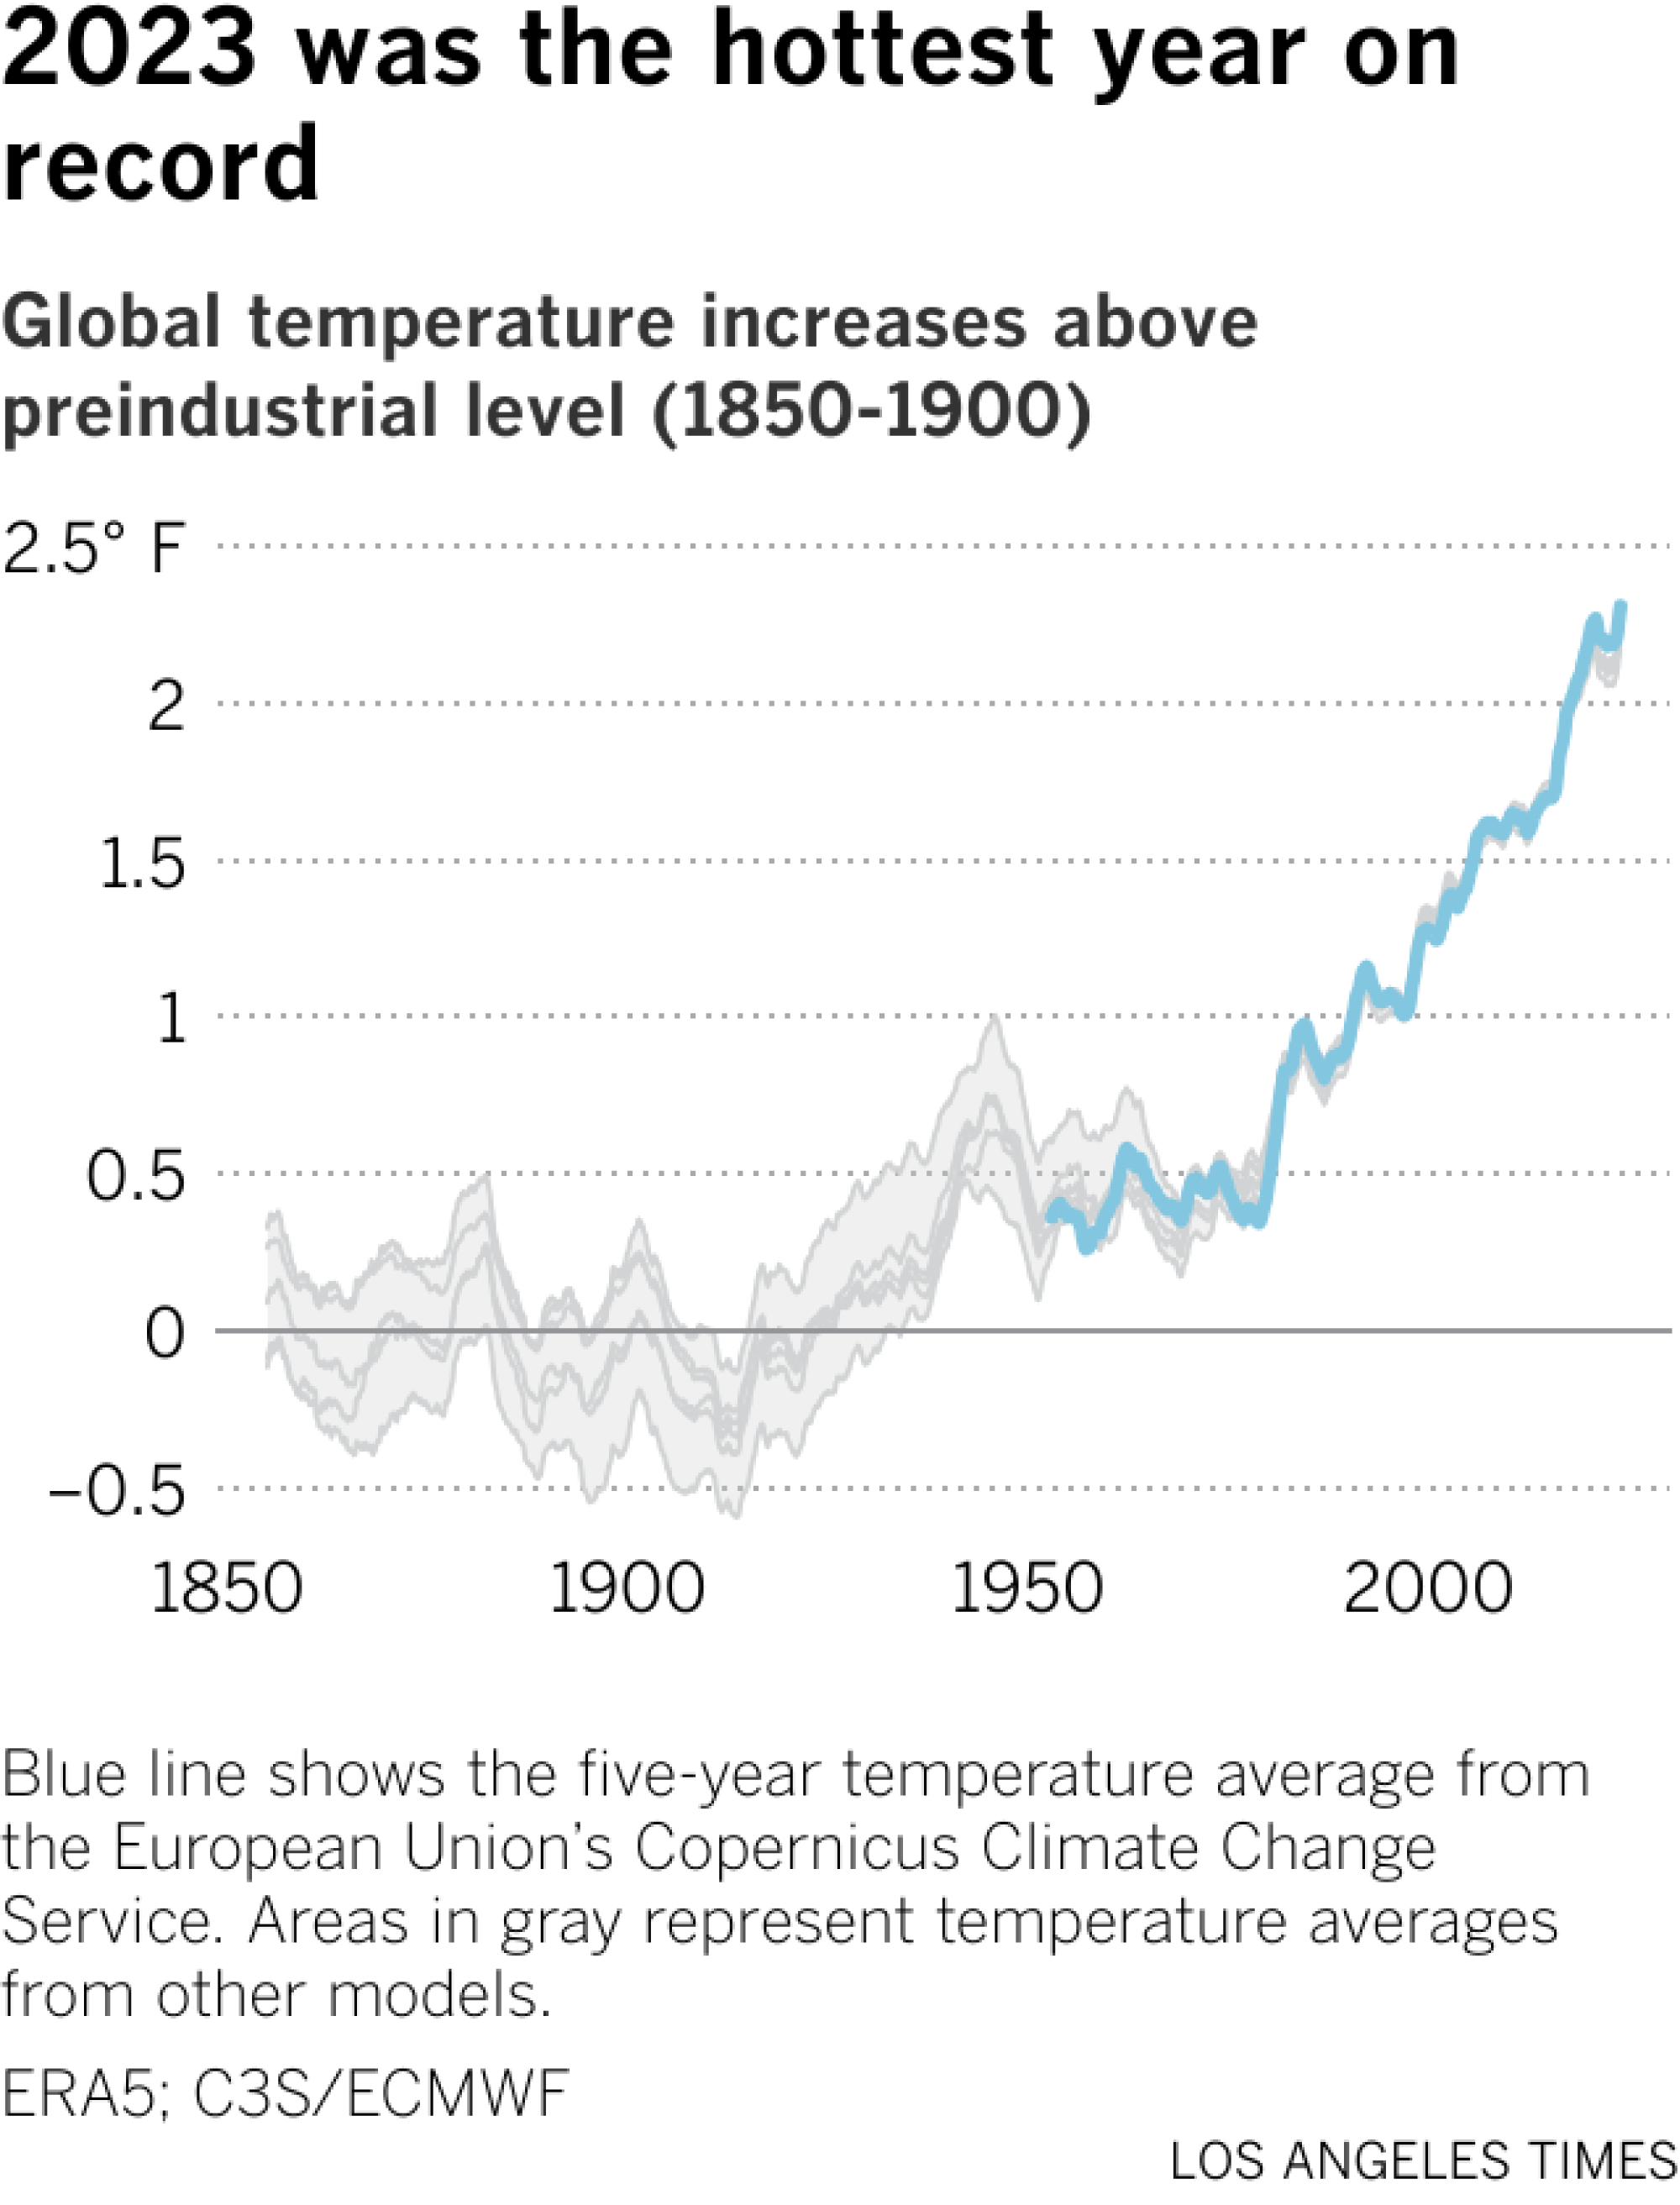 折线图显示了哥白尼和其他来源自 1850 年以来估计的平均温度变化。大约自 1975 年以来，温度一直在稳步上升。